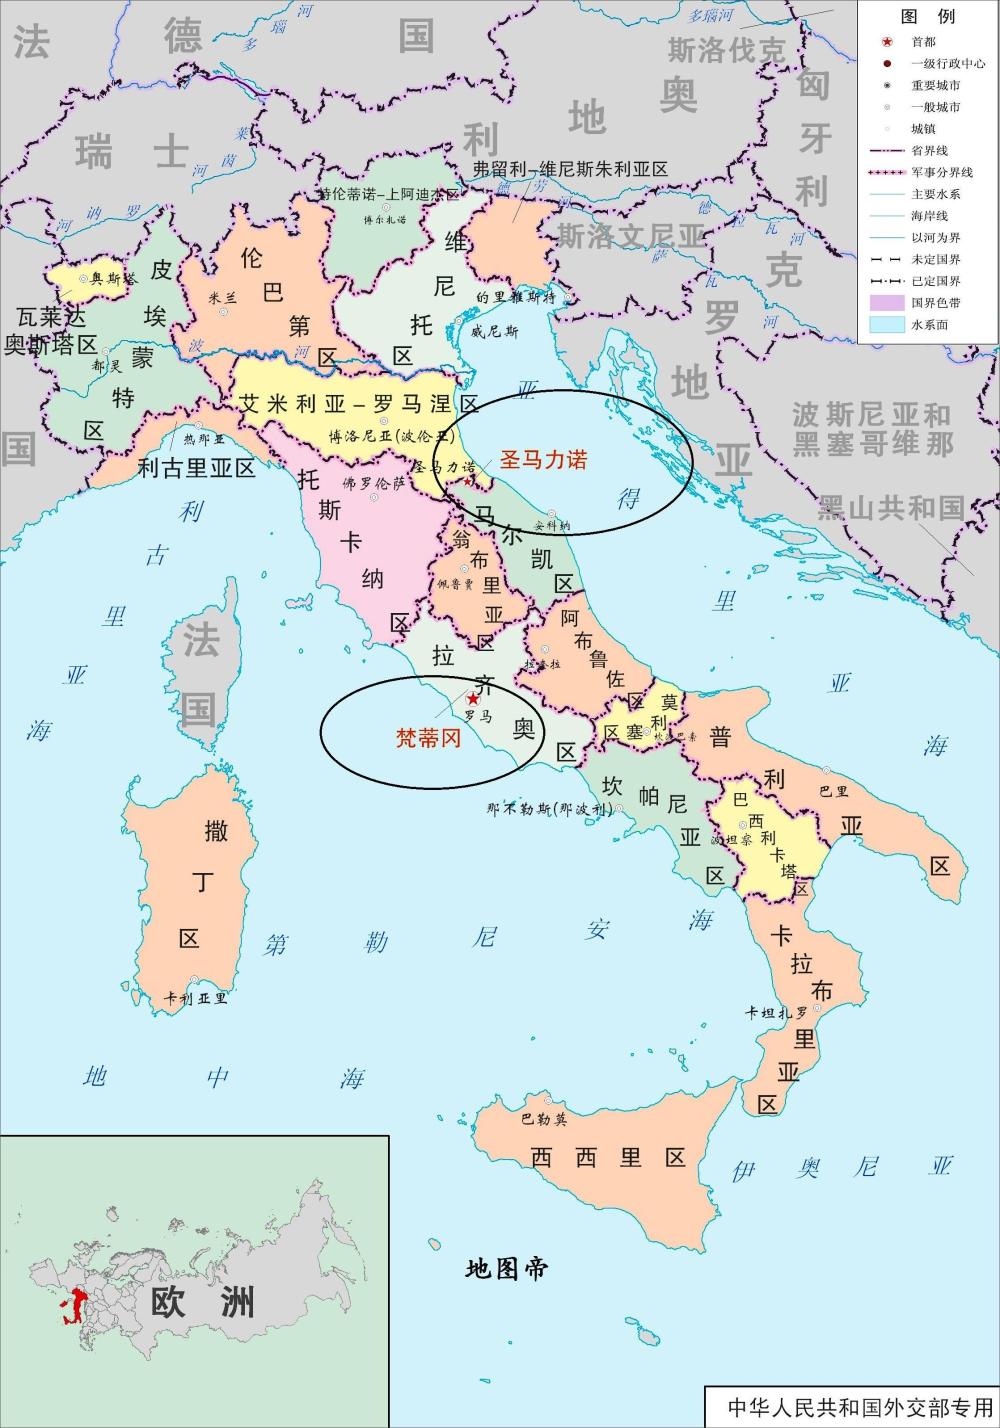 意大利一共有4个国中国, 你都知道么?